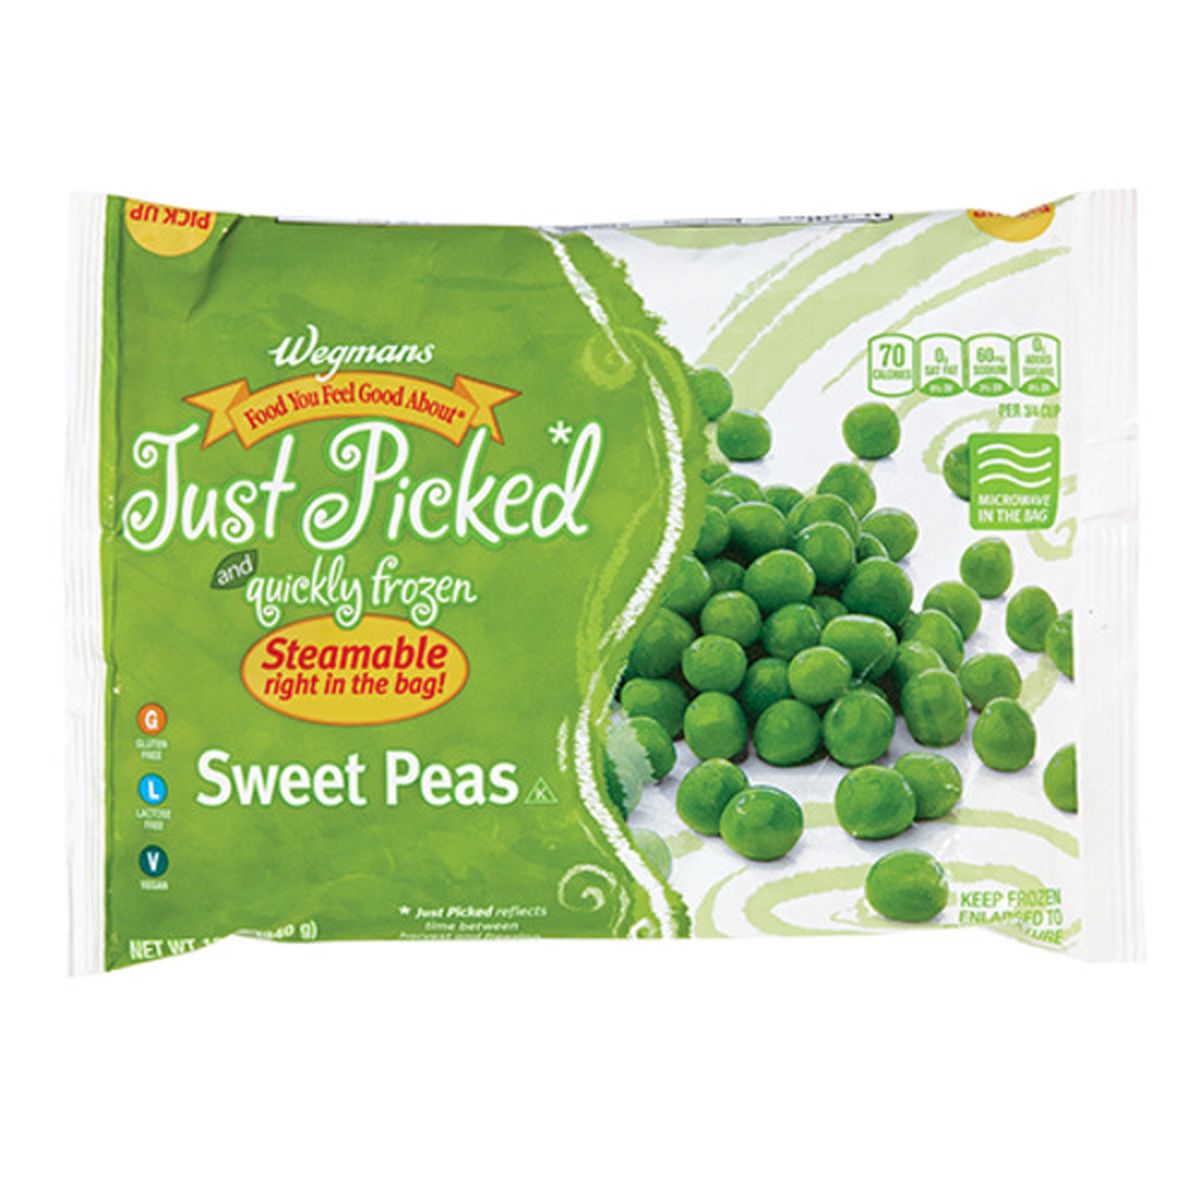 Calories in Wegmans Microwaveable Sweet Peas